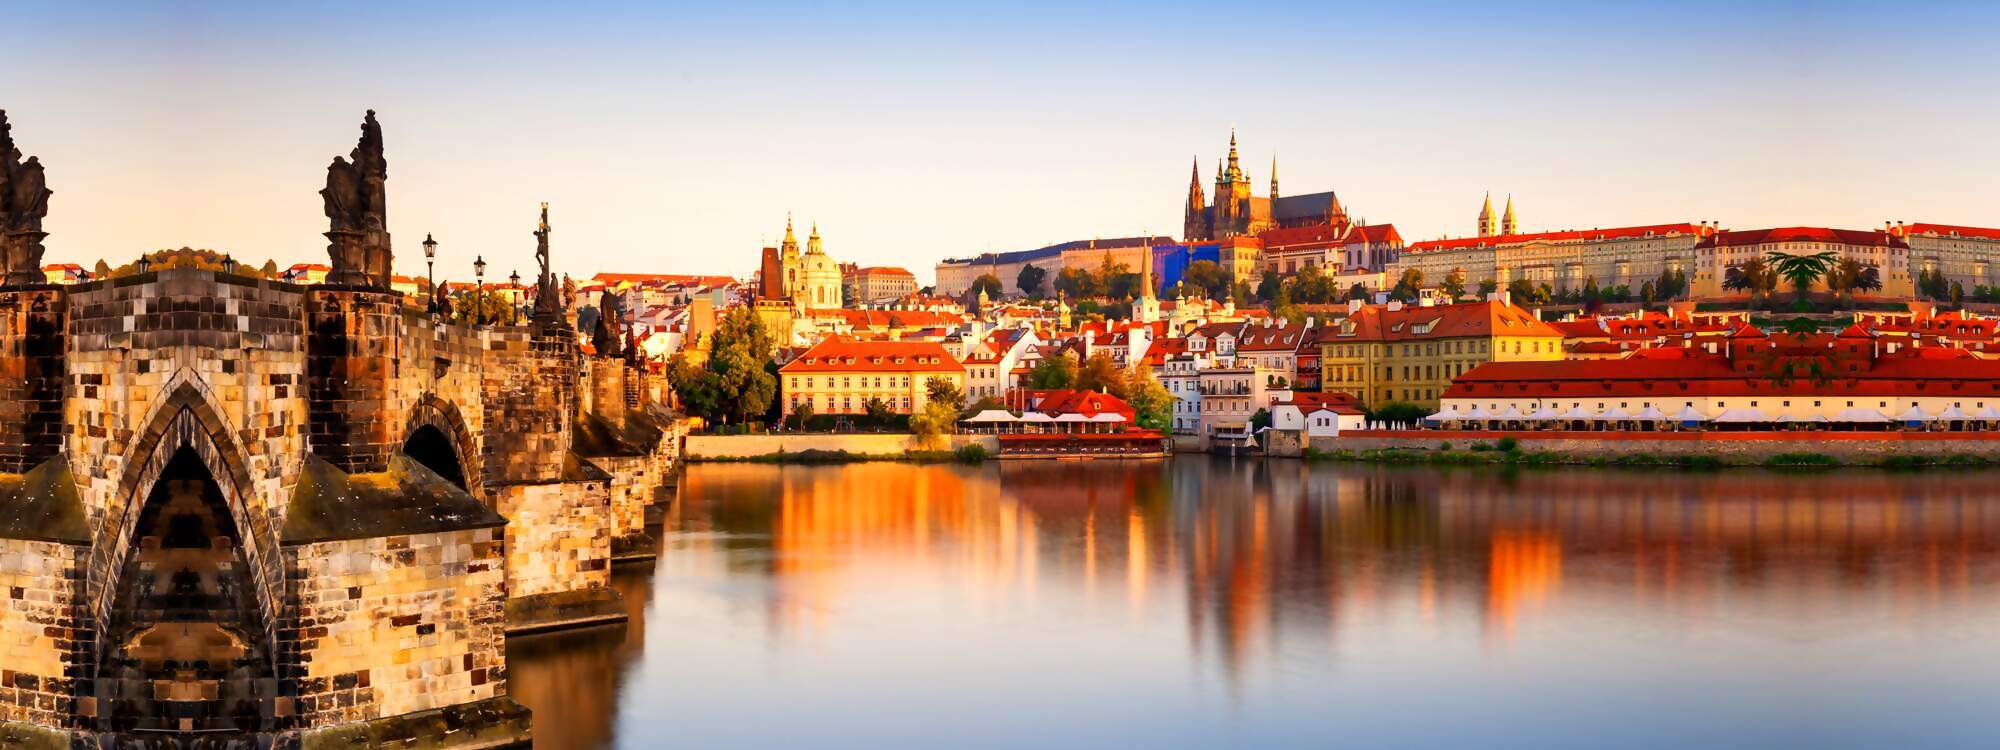 Blick auf die Altstadt mit der Prager Burg und die Karlsbruecke bei Sonnenaufgang